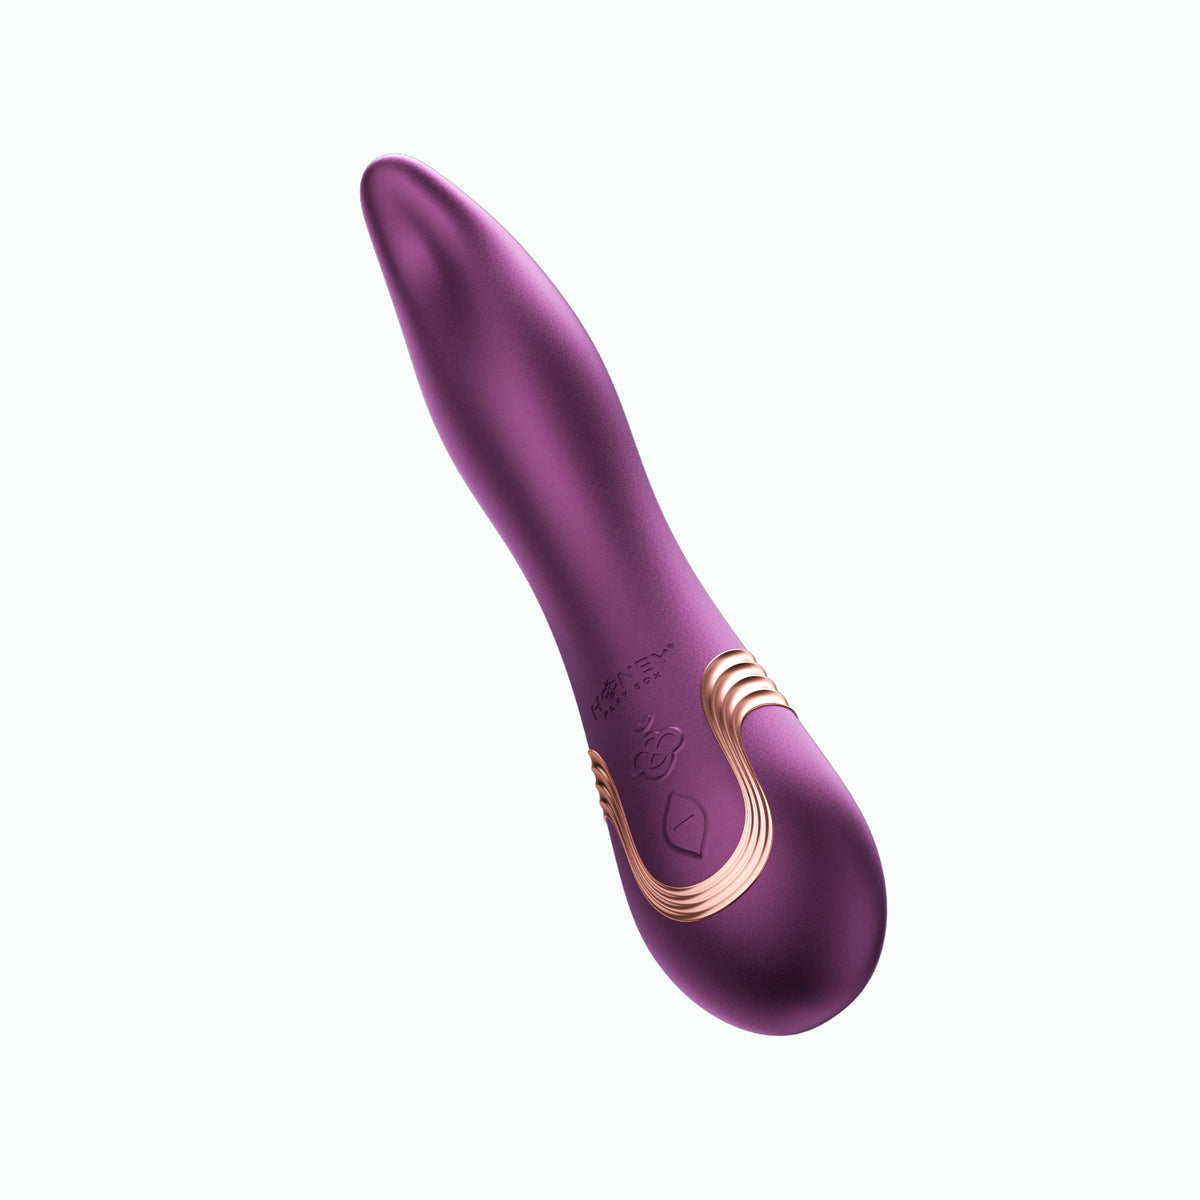 Fling - Vibrador para lamer oral controlado por aplicación - Púrpura